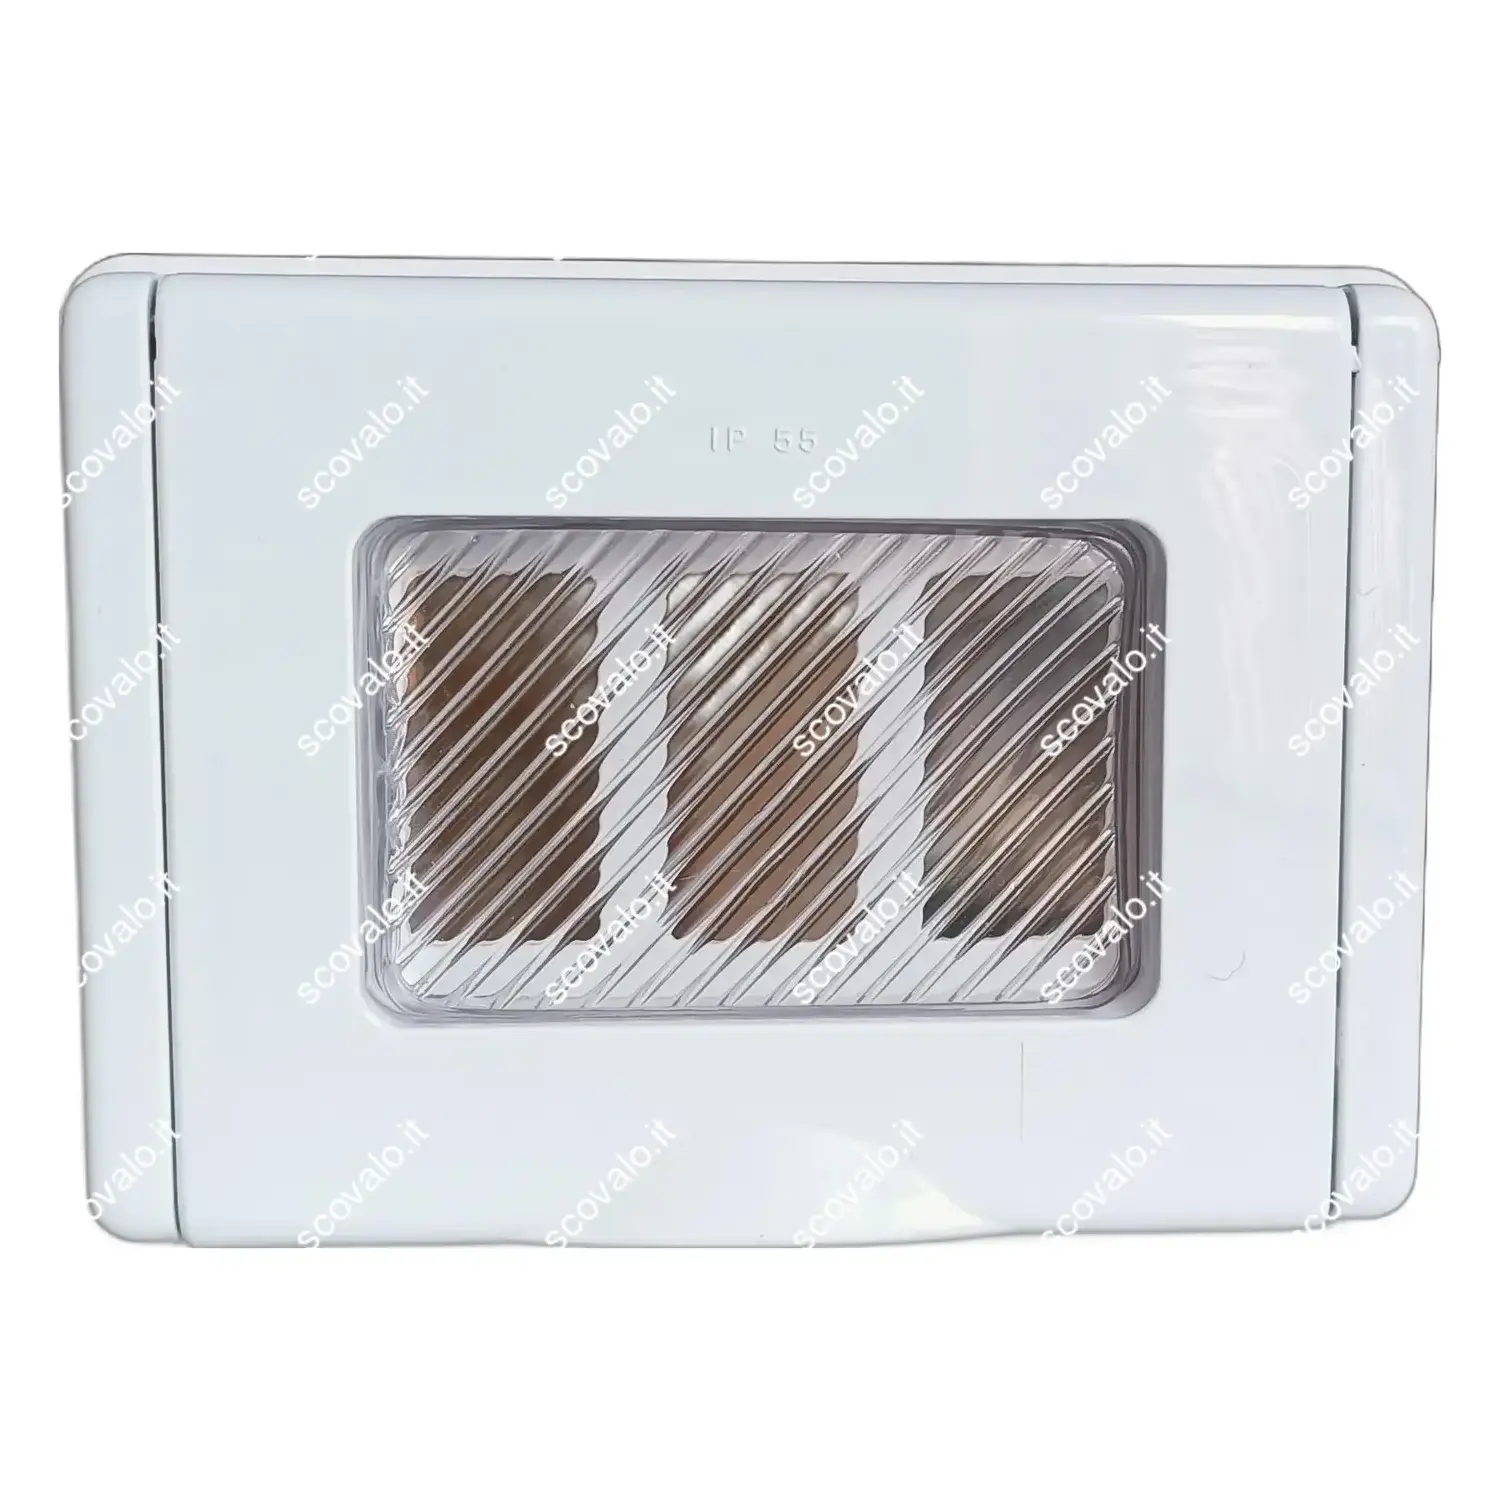 immagine placca coperchio idrobox 3 moduli compatibile bticino magic bianco ip55